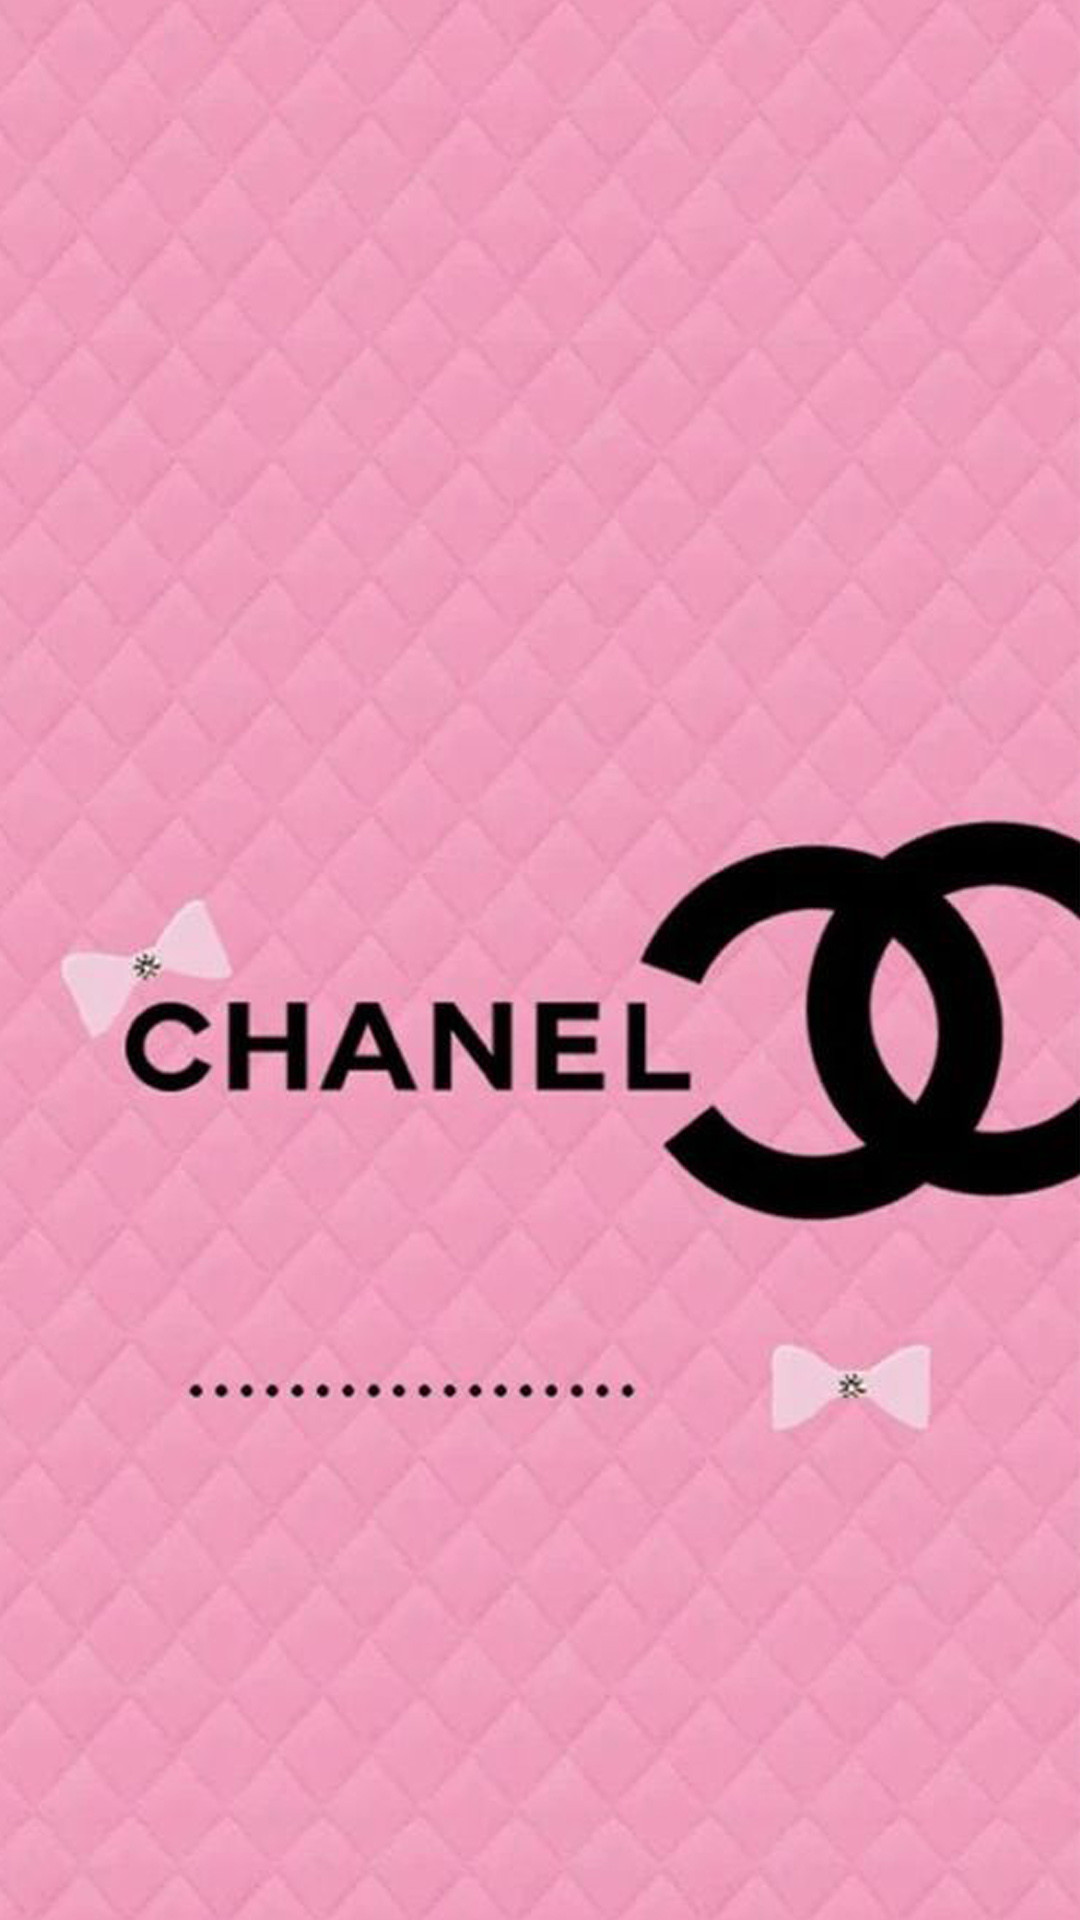 ブランド 壁紙 Chanel The Art Of Mike Mignola